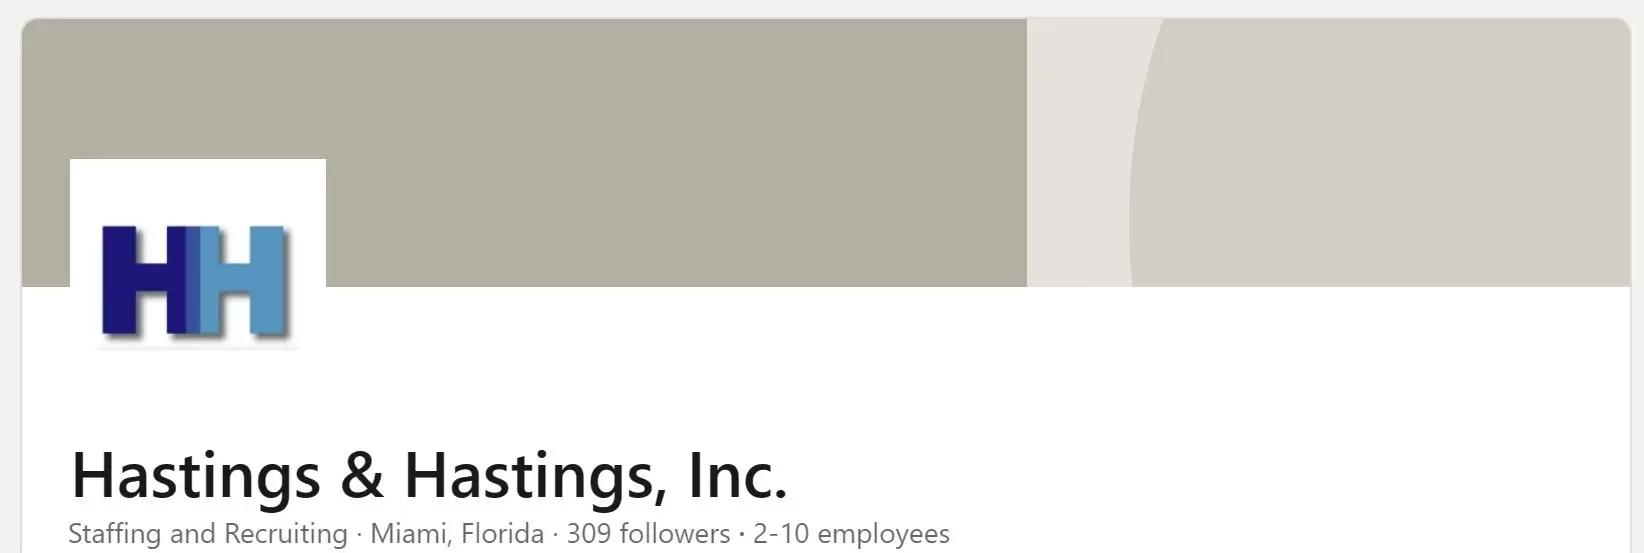 Hastings & Hastings staffing on LinkedIn